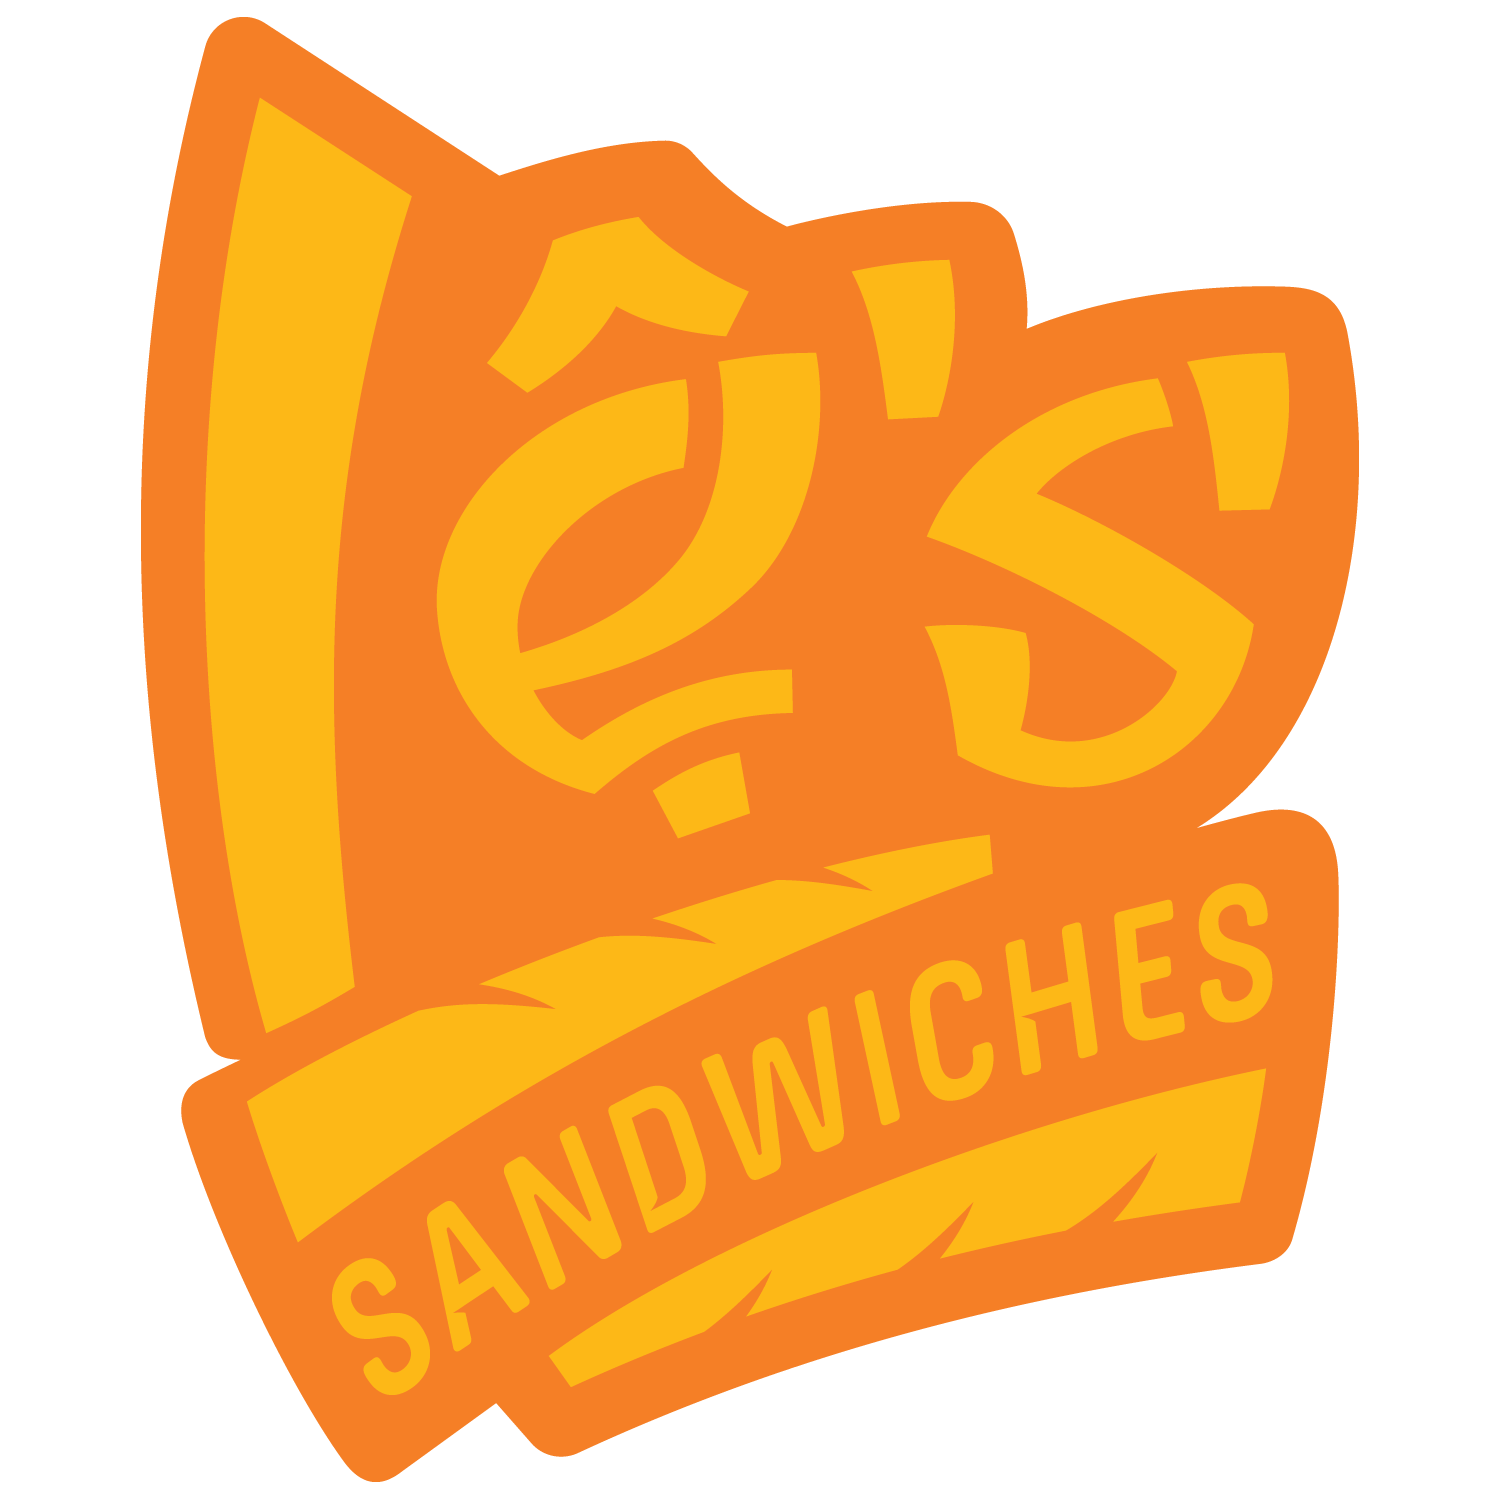 Le's Sandwiches & Cafe